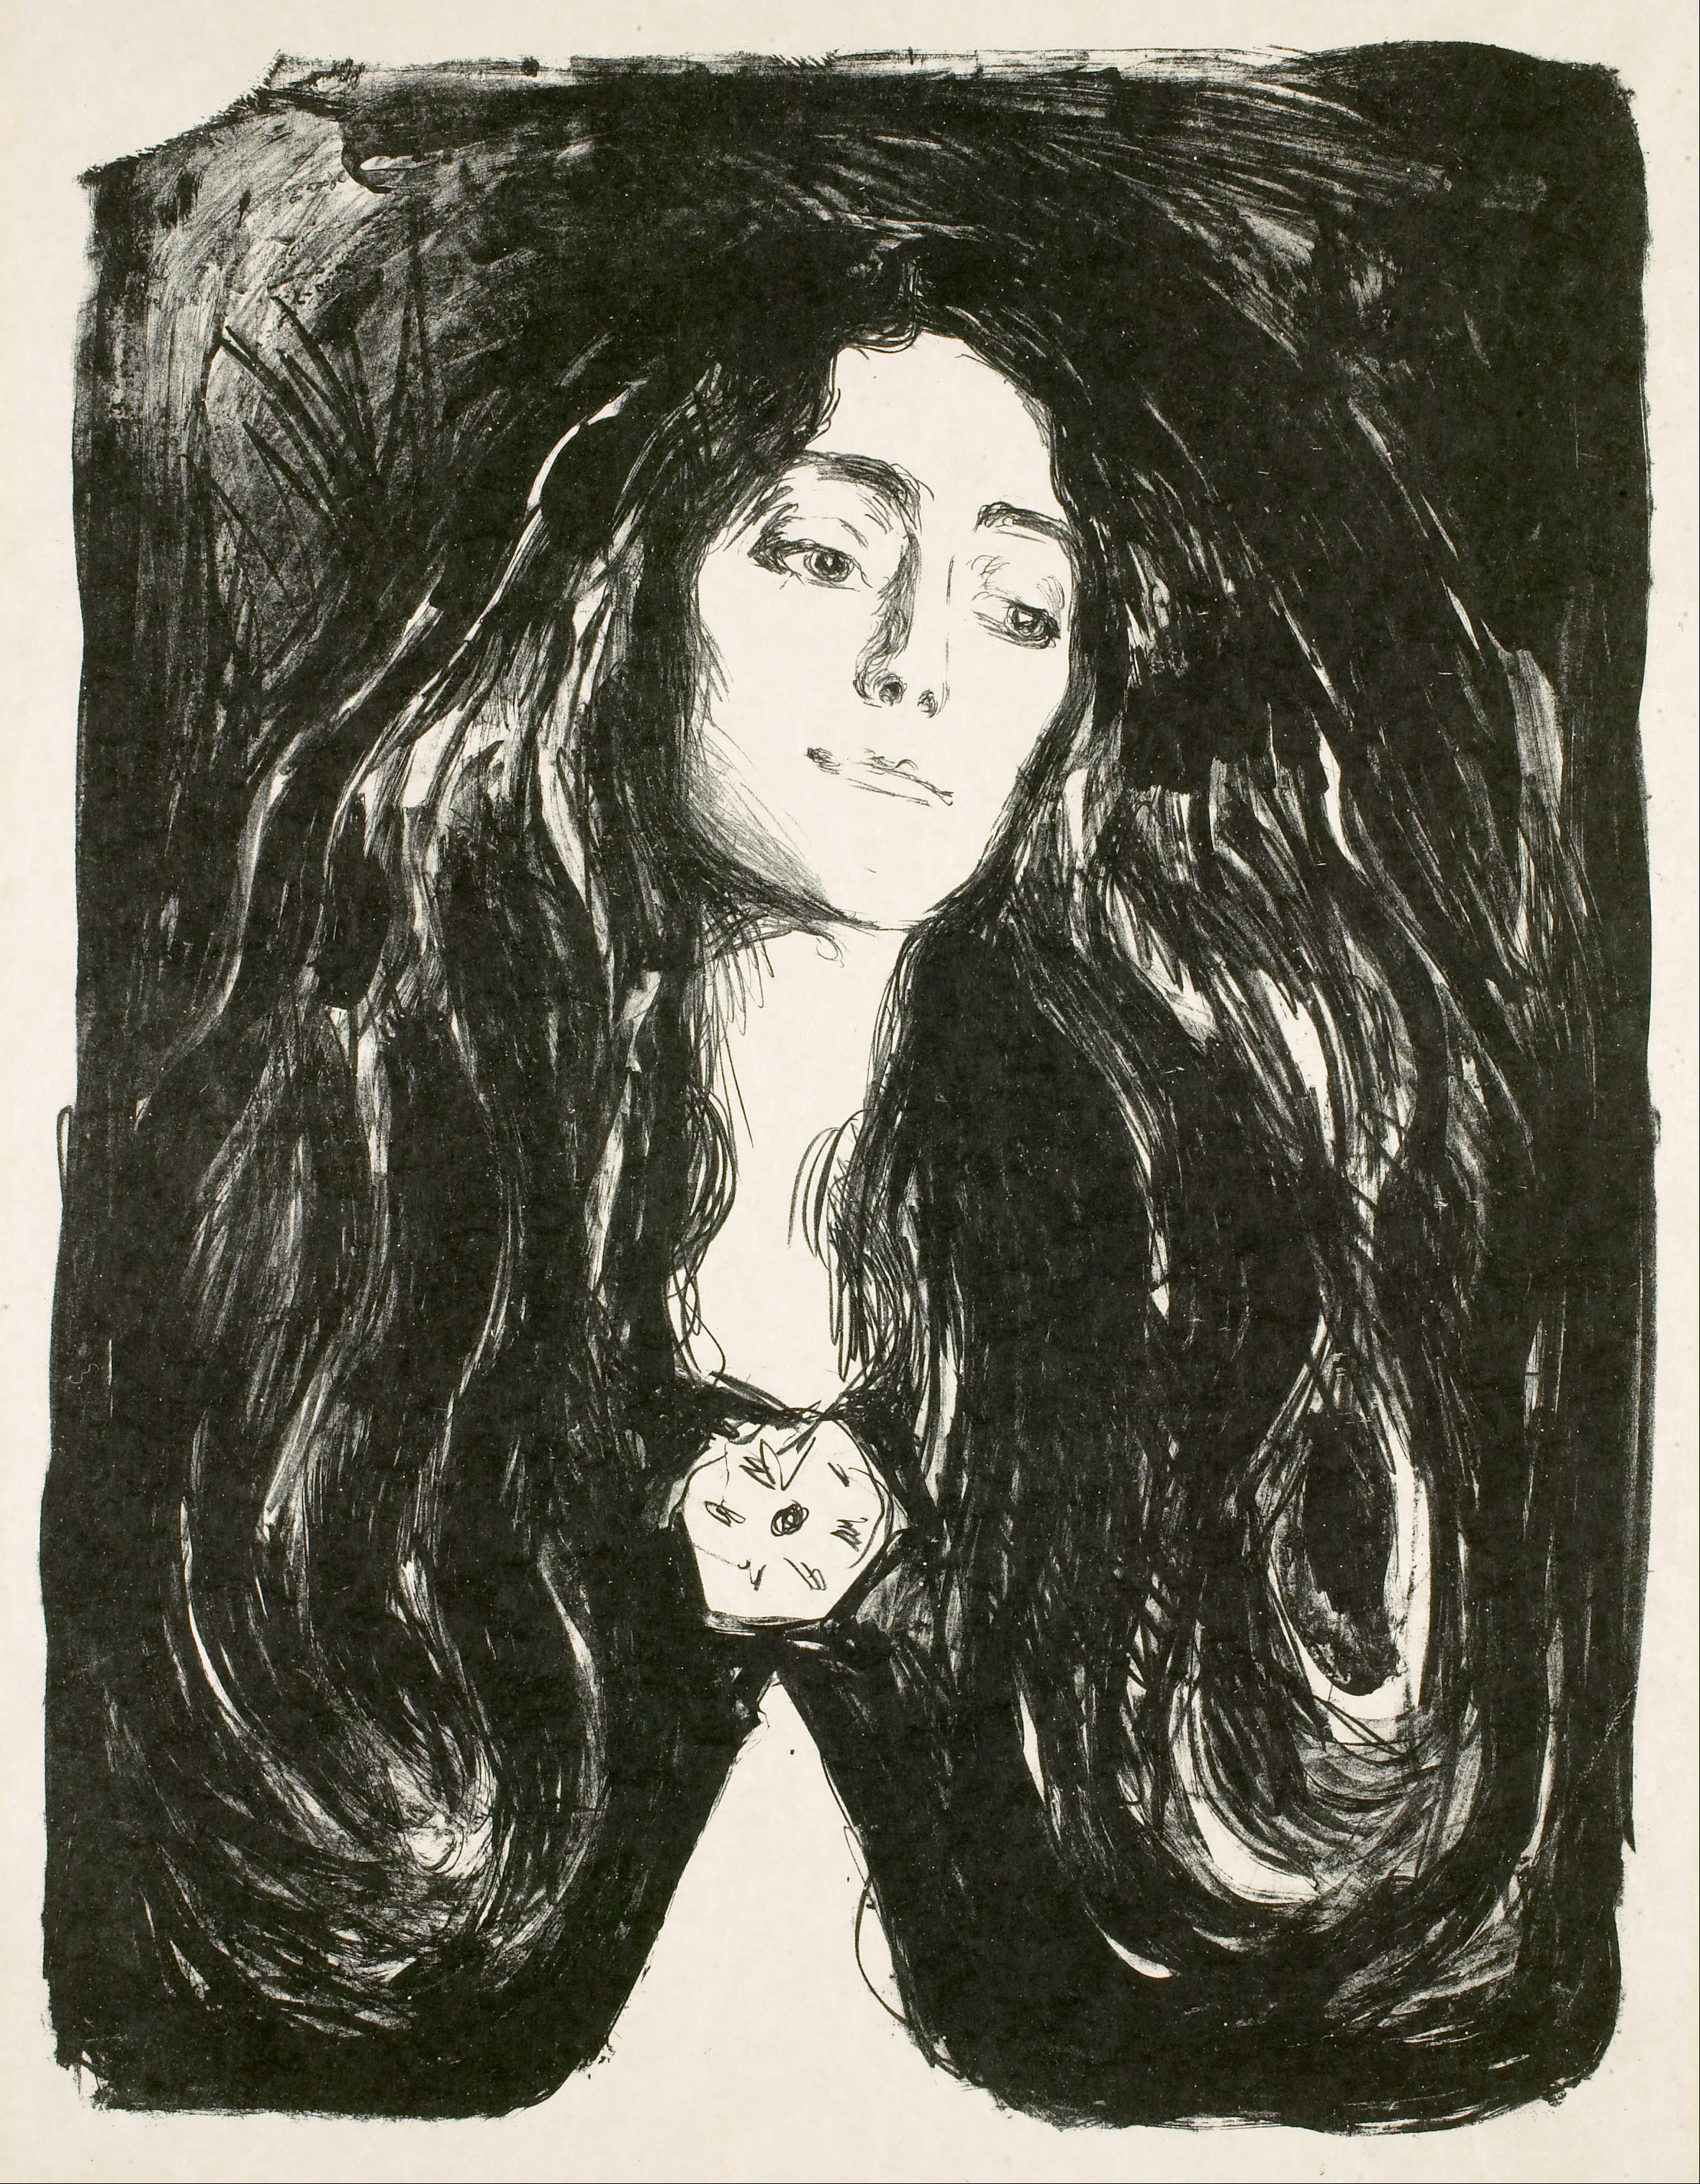 ブローチ エヴァ・ムドッチ by Edvard Munch - 1903年 - 53.2 x 76 cm 